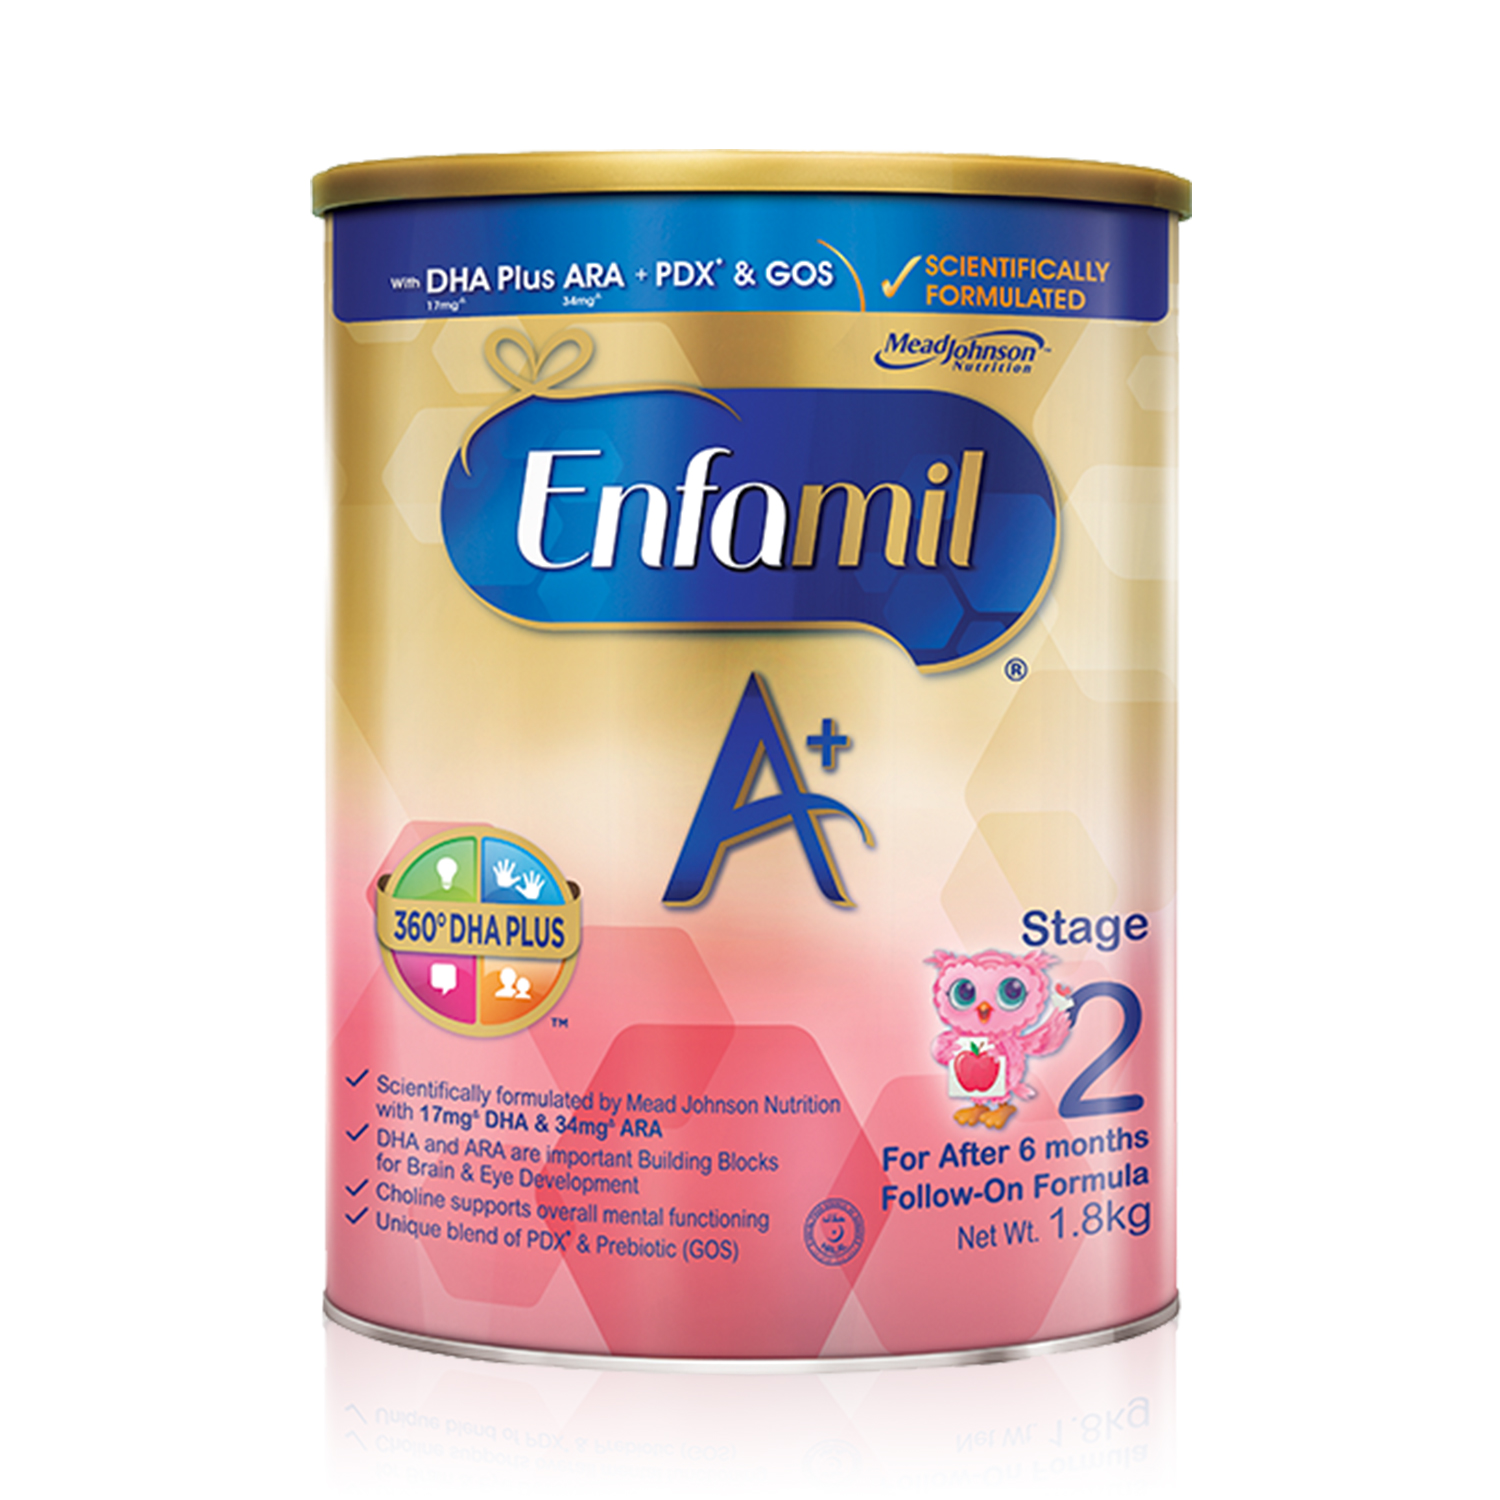 Enfamil A+ Stage 2 Infant Formula Baby Milk Powder 360DHA+ (6M+) 1.8kg